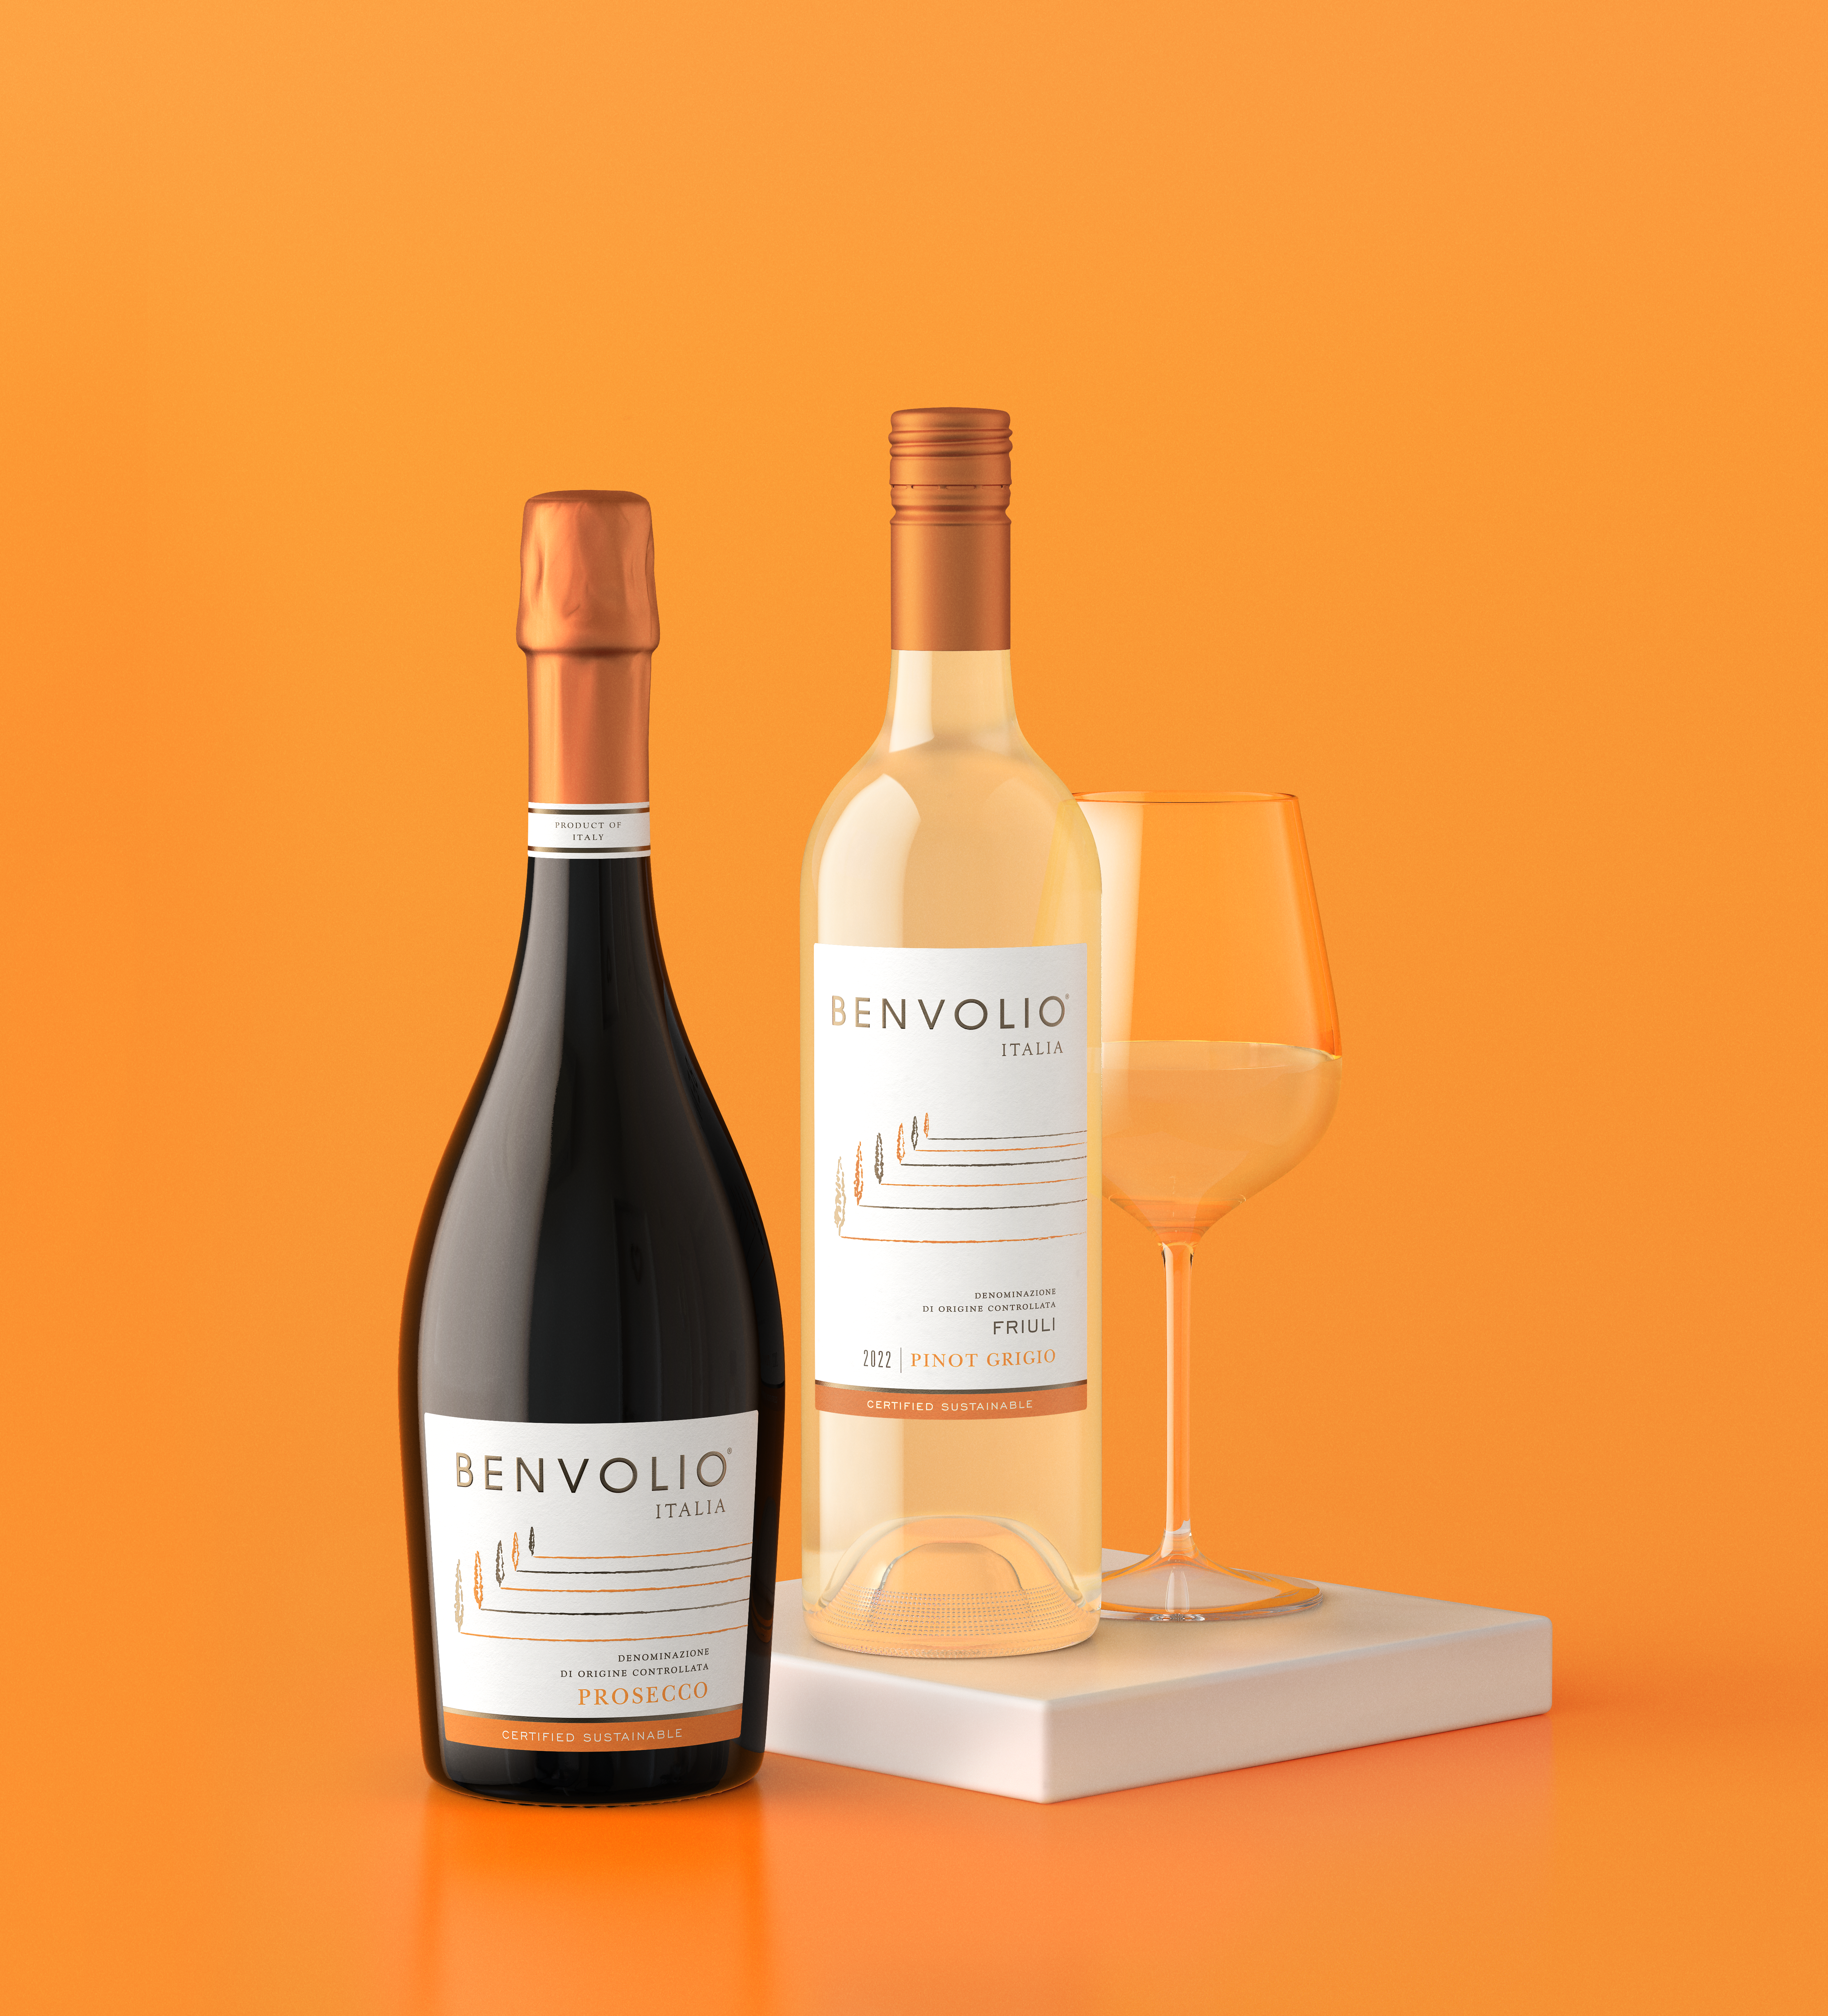 Benvolio Bottles of wine